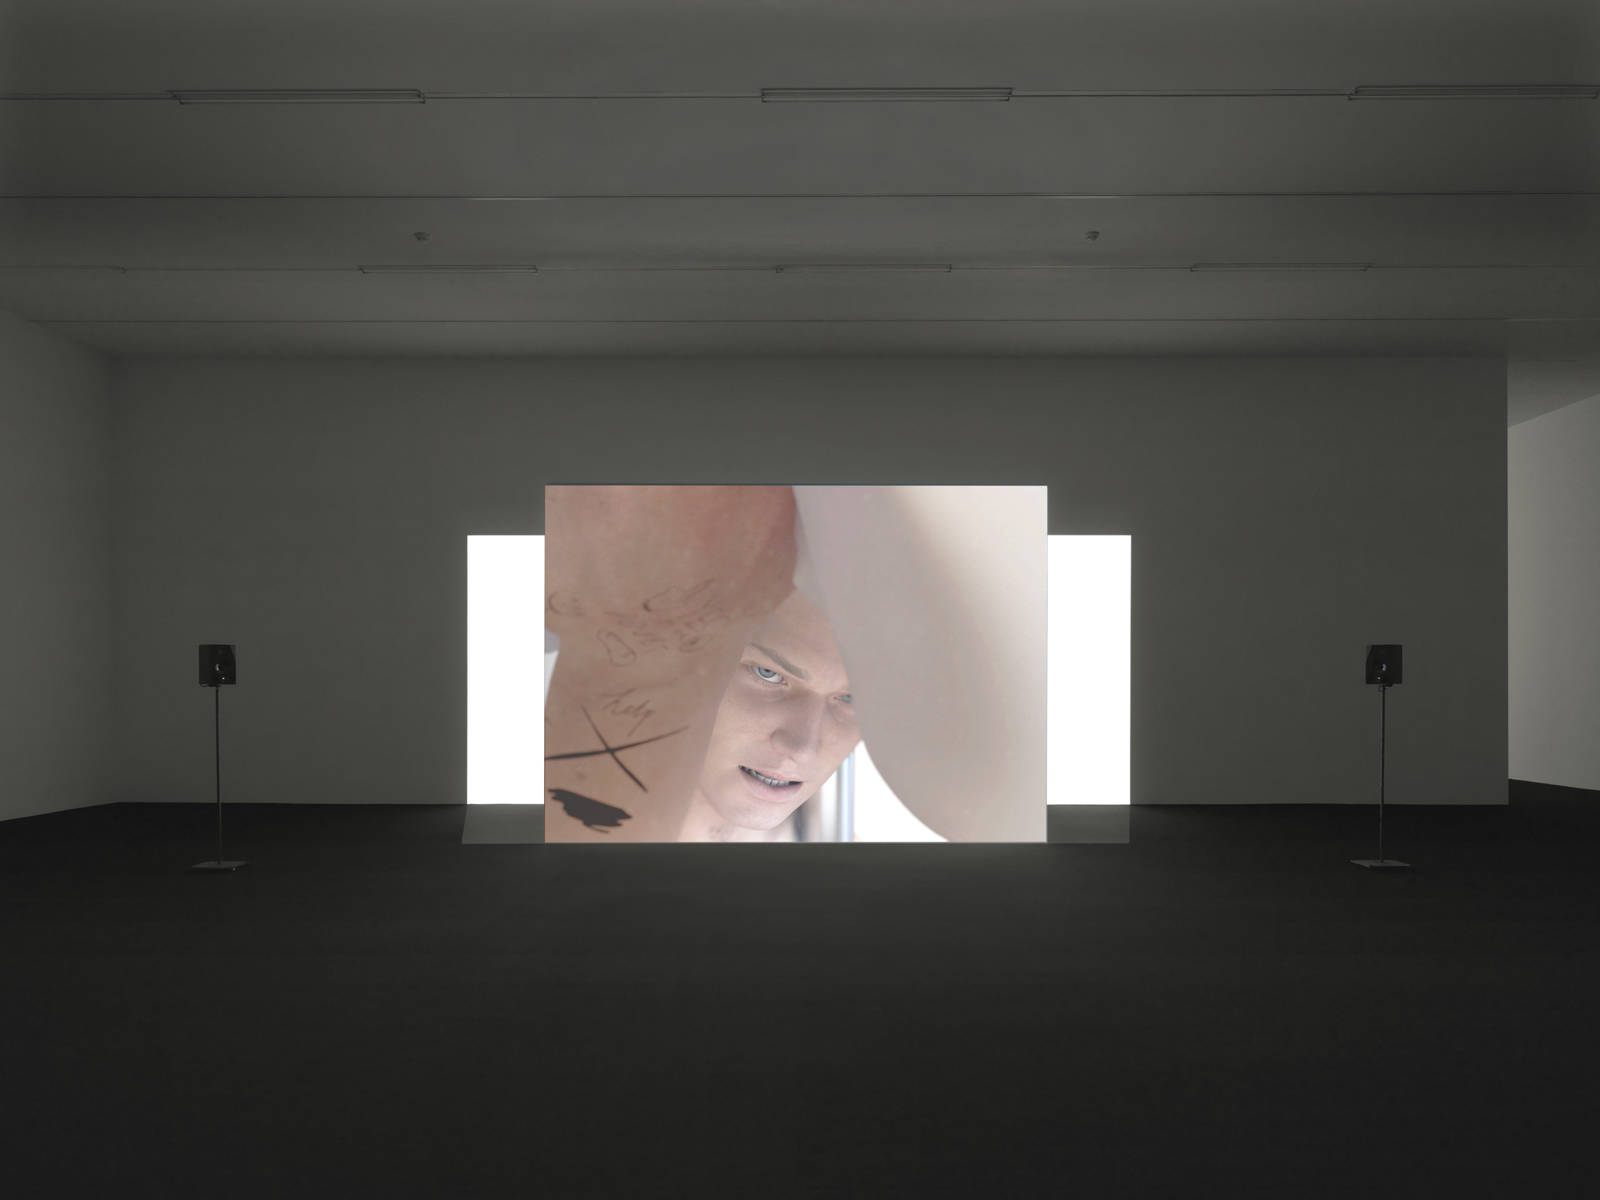 Ed Atkins / Exhibition view, Kunsthalle Zürich / 2014